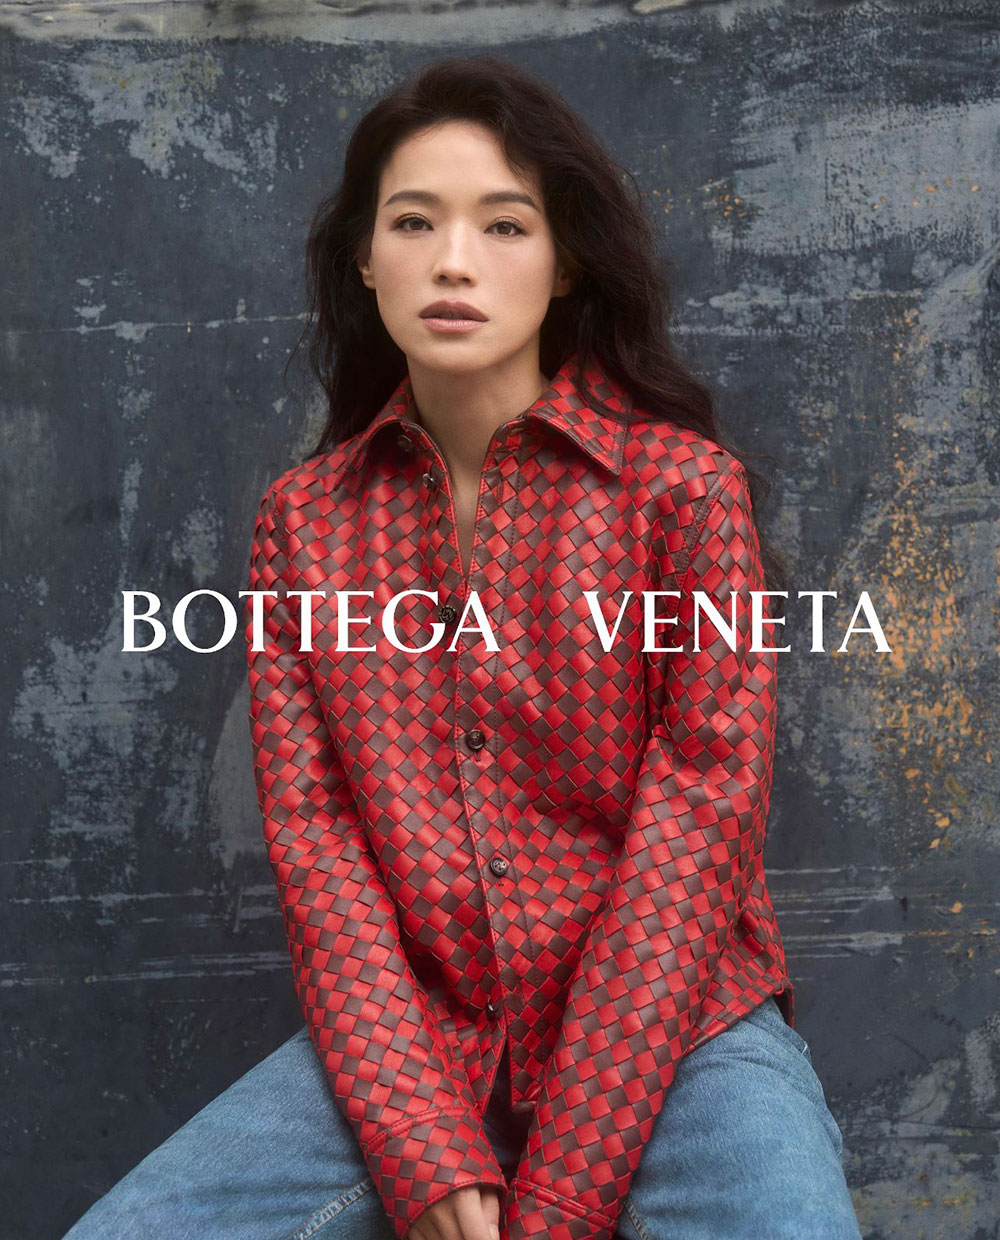  Nữ diễn viên nổi tiếng Thư Kỳ được xác nhận là gương mặt đại diện mới nhất của thương hiệu Bottega Veneta. Cô là biểu tượng thứ hai của ngành giải trí Trung Quốc gia nhập đội hình ngôi sao của Bottega Veneta kể từ khi giám đốc sáng tạo Matthieu Blazy nắm quyền. Với một thương hiệu theo đuổi những giá trị bền vững như Bottega Veneta thì Thư Kỳ là sự lựa chọn phù hợp cho vị trí đại sứ toàn cầu.